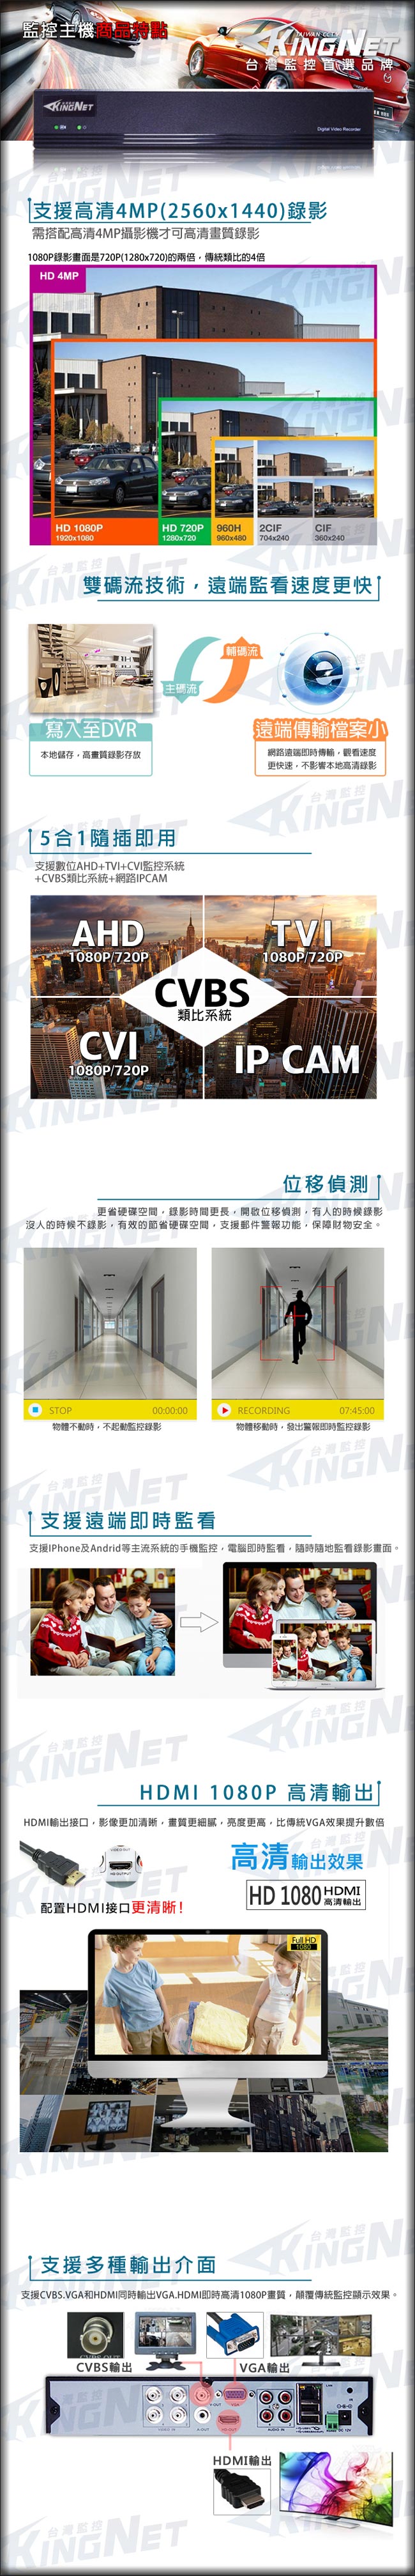 監視器攝影機 KINGNET 4路4MP監控主機 + 2支 HD 1080P 室內半球